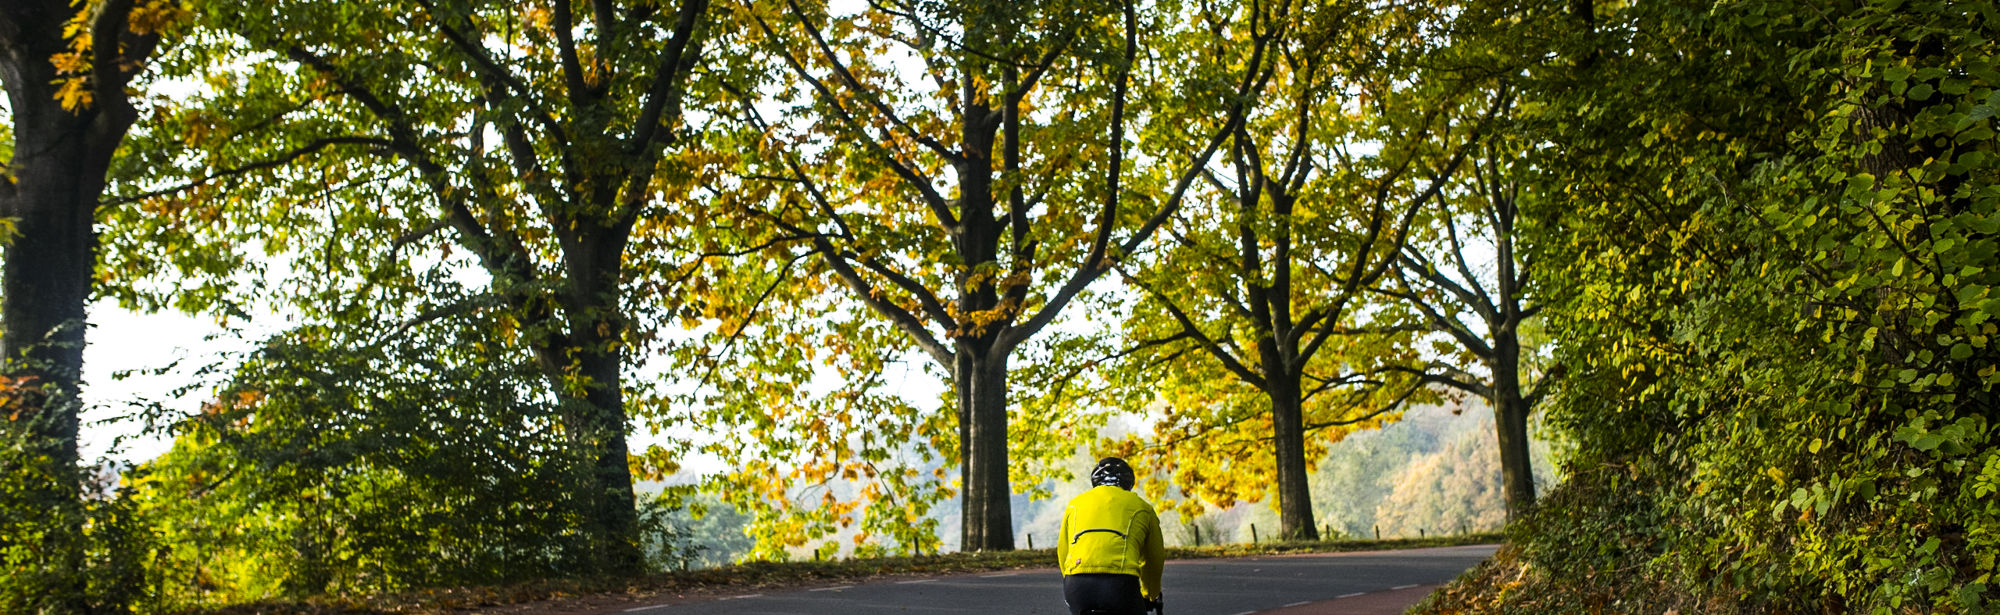 Wielrenner fietst een berg op met herfstbomen als uitzicht